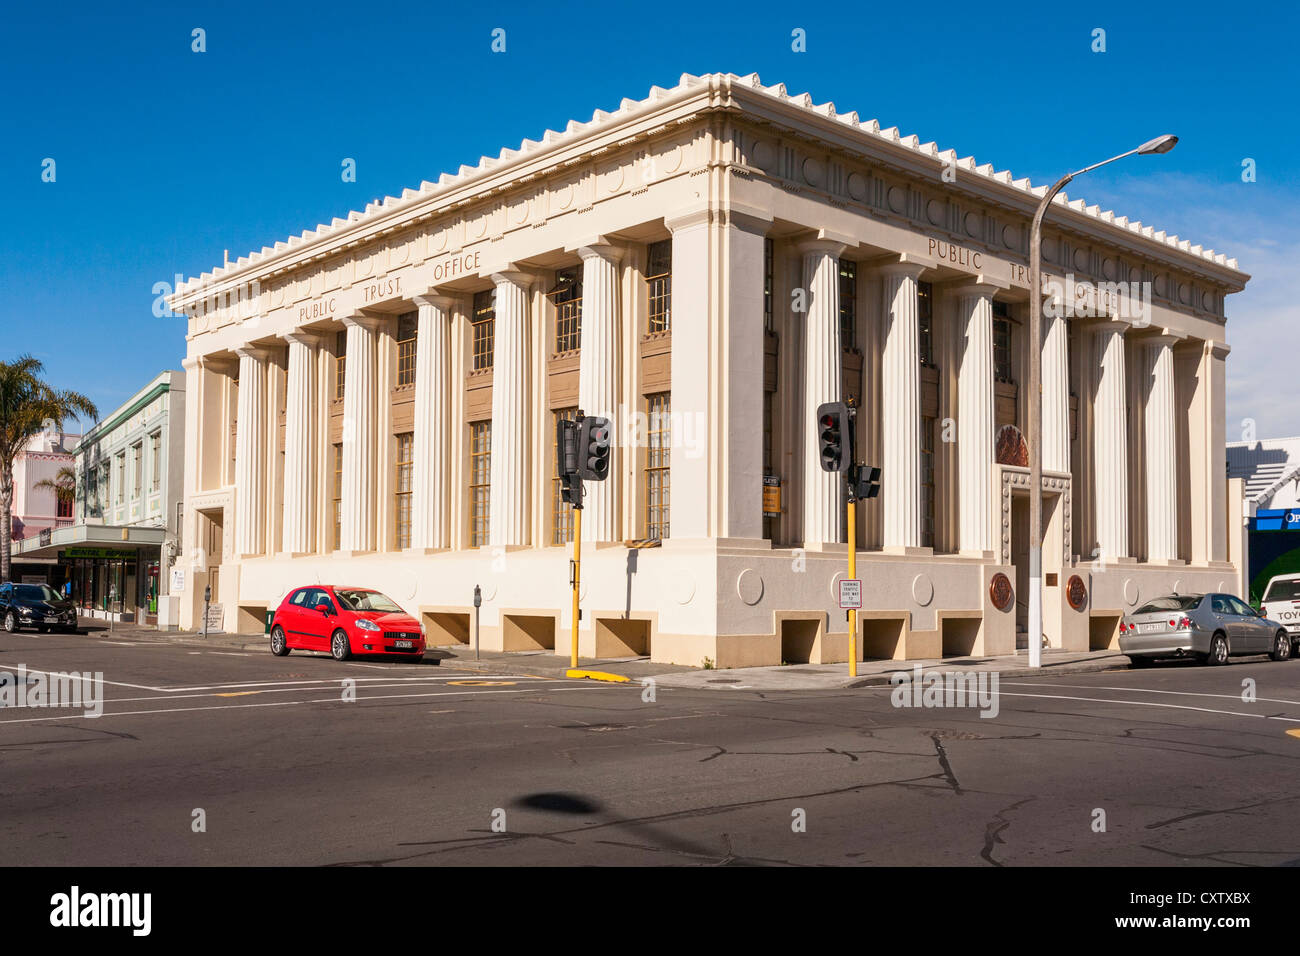 La fiducia del pubblico ufficio è stato uno dei pochi edifici a sinistra in piedi nel centro di Napier, Nuova Zelanda Foto Stock